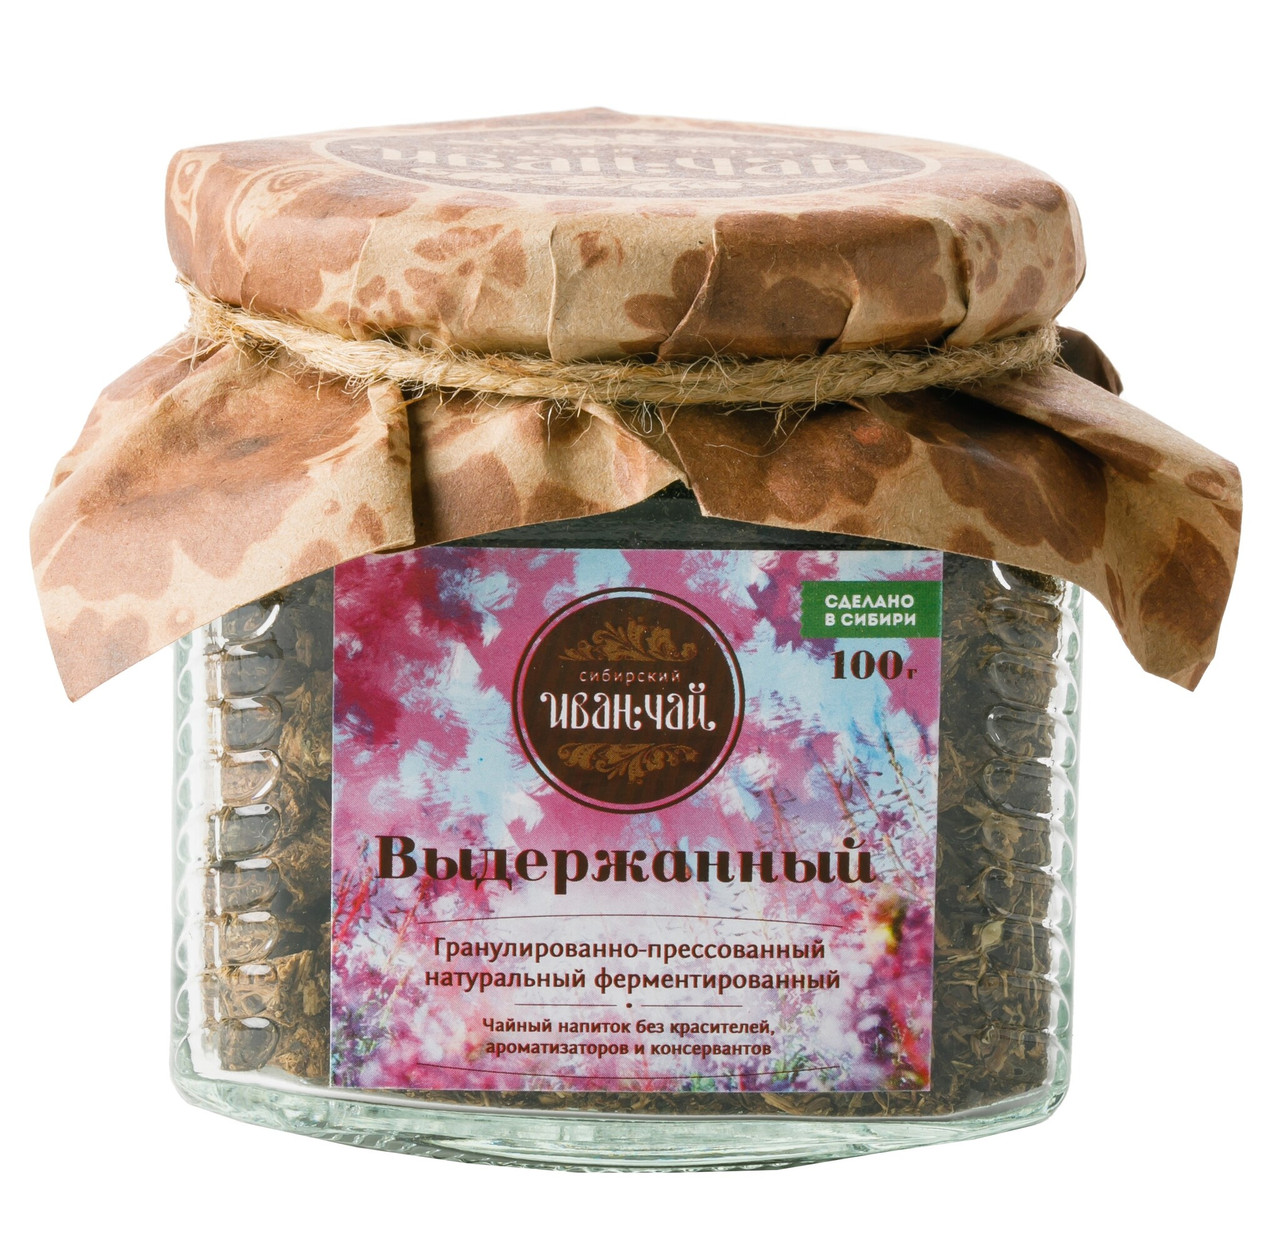 Сибирский иван-чай «Выдержанный» ферментированный, 100 г